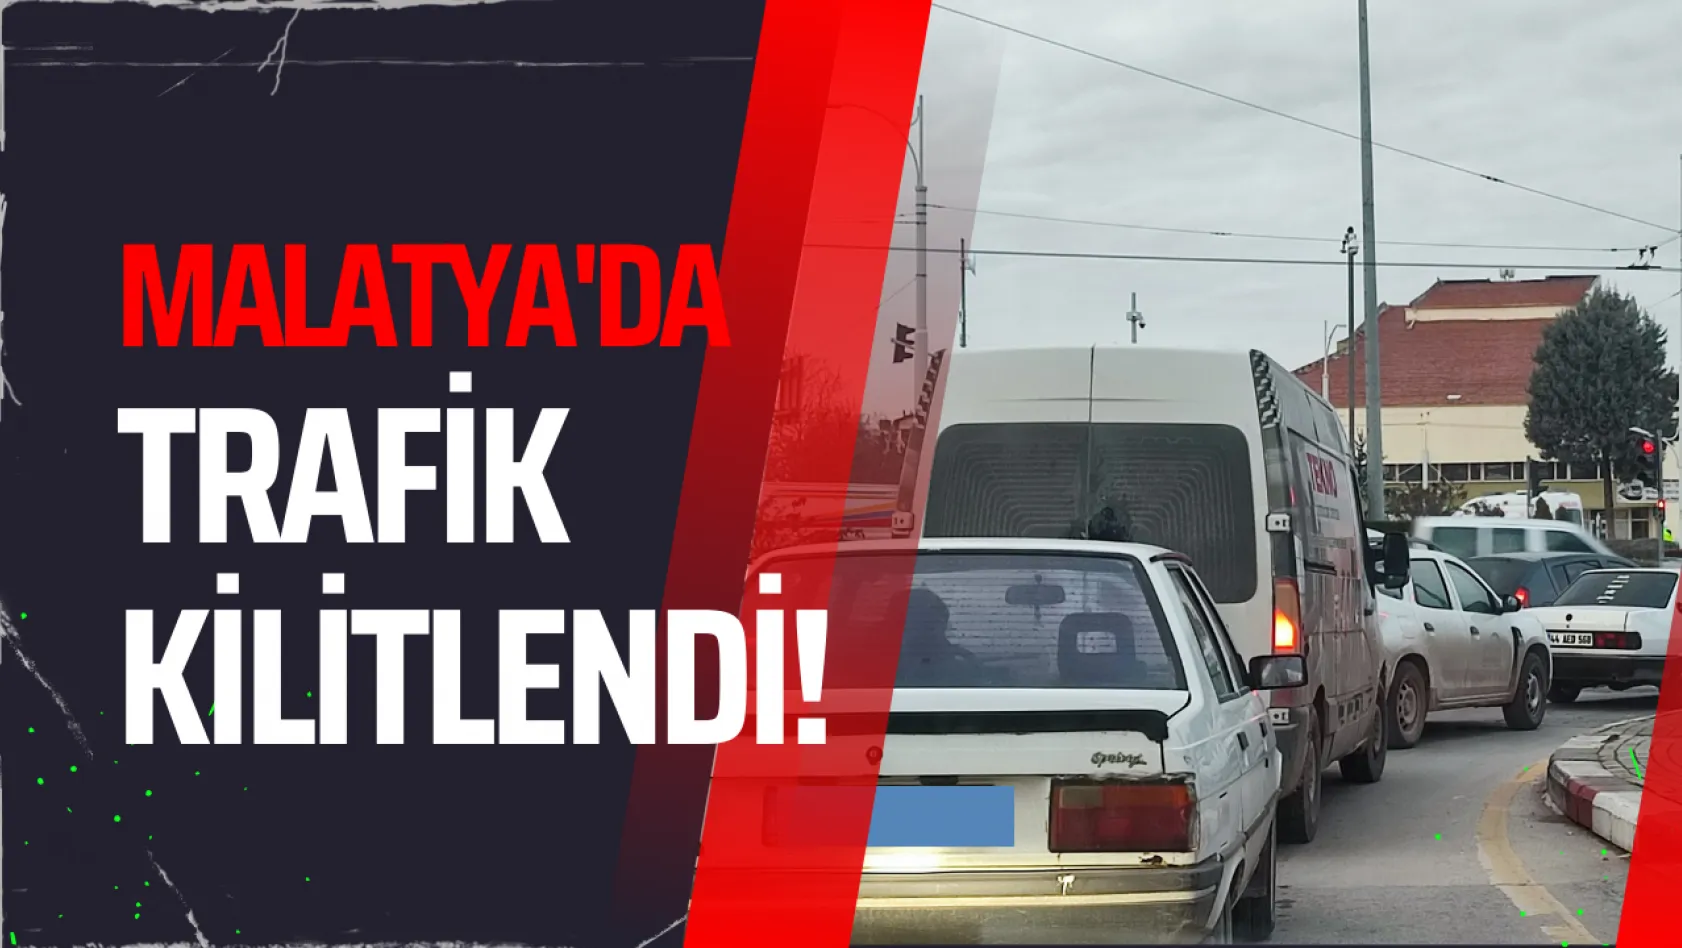 Malatya'da trafik kilitlendi!